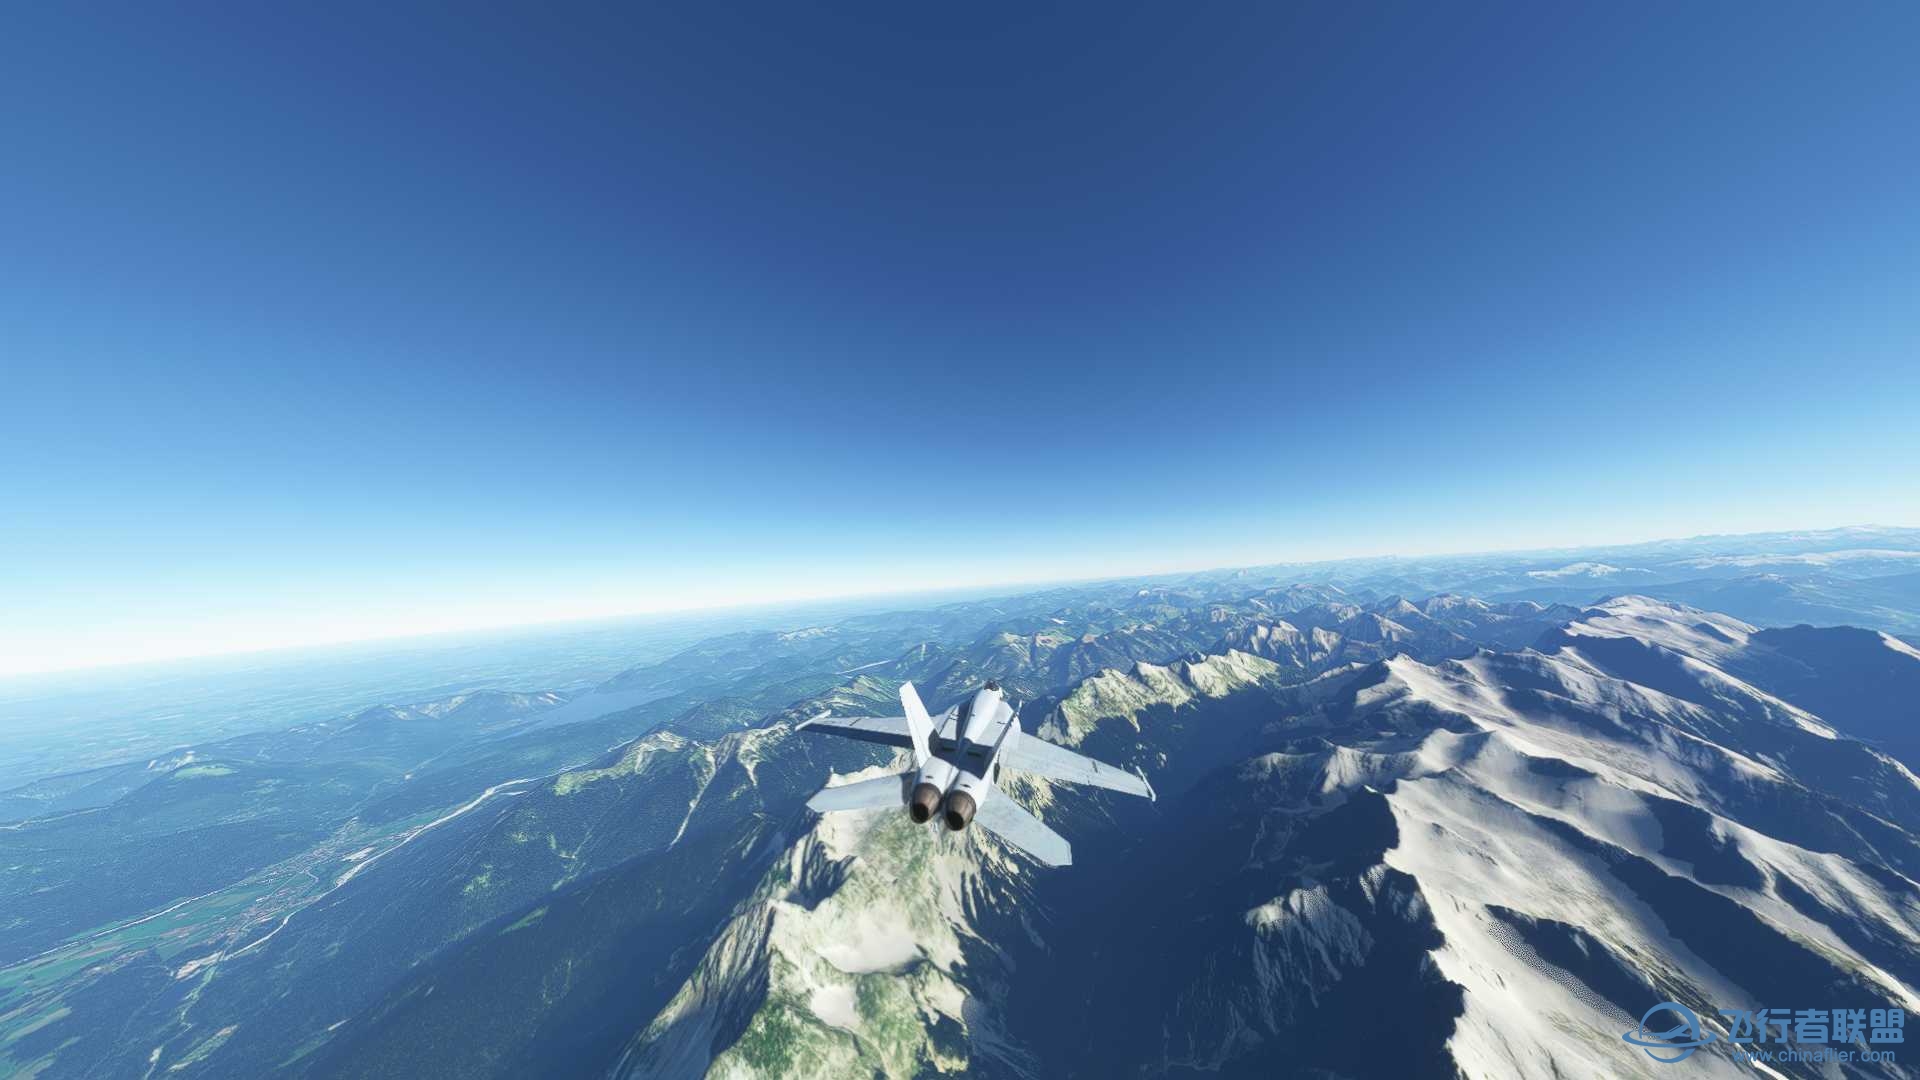 阿尔卑斯山脉附近飞行无法进行游戏-6580 